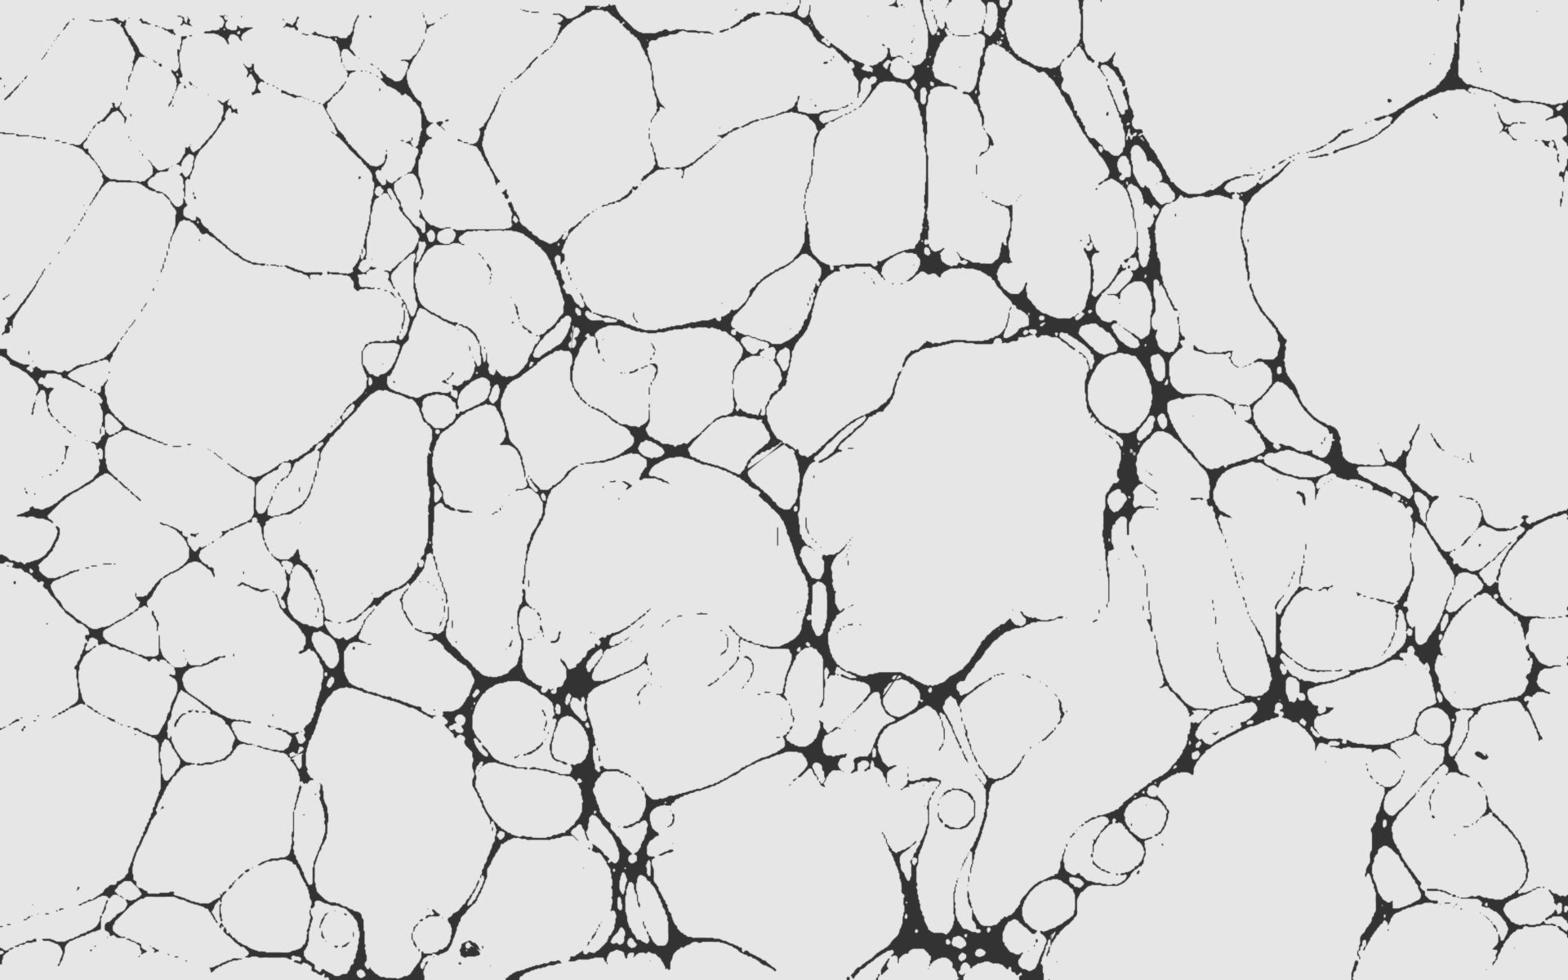 Marmorstruktur zerkratzter Grunge-Hintergrund Textur-Vektor-Staub-Overlay Not körniger grungy Effekt Distressed-Hintergrund-Vektor-Illustration isoliert schwarz auf weißem Hintergrund vektor